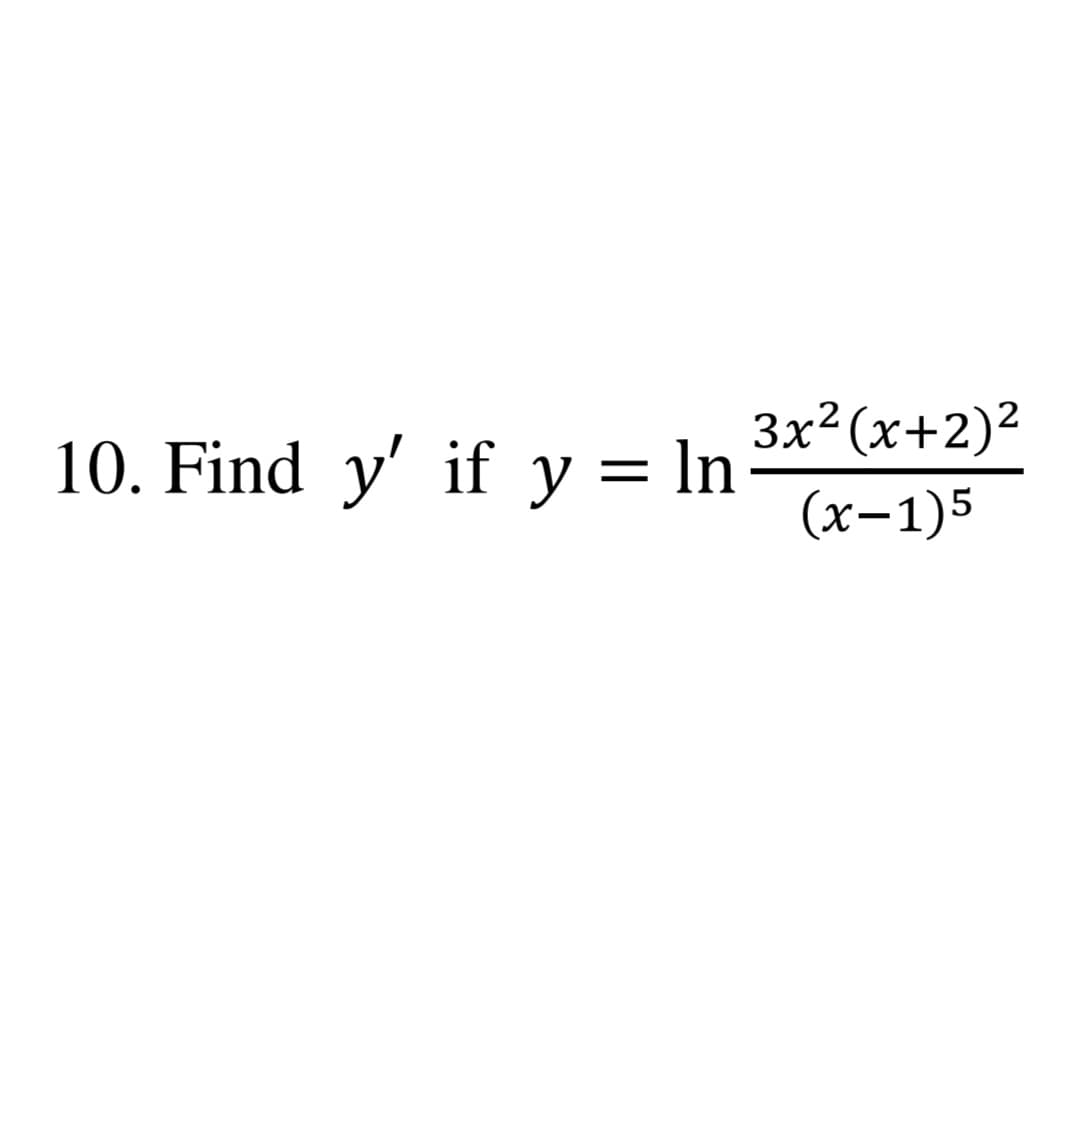 Зx? (х+2)2
Find y' if y = ln
(х-1)5
